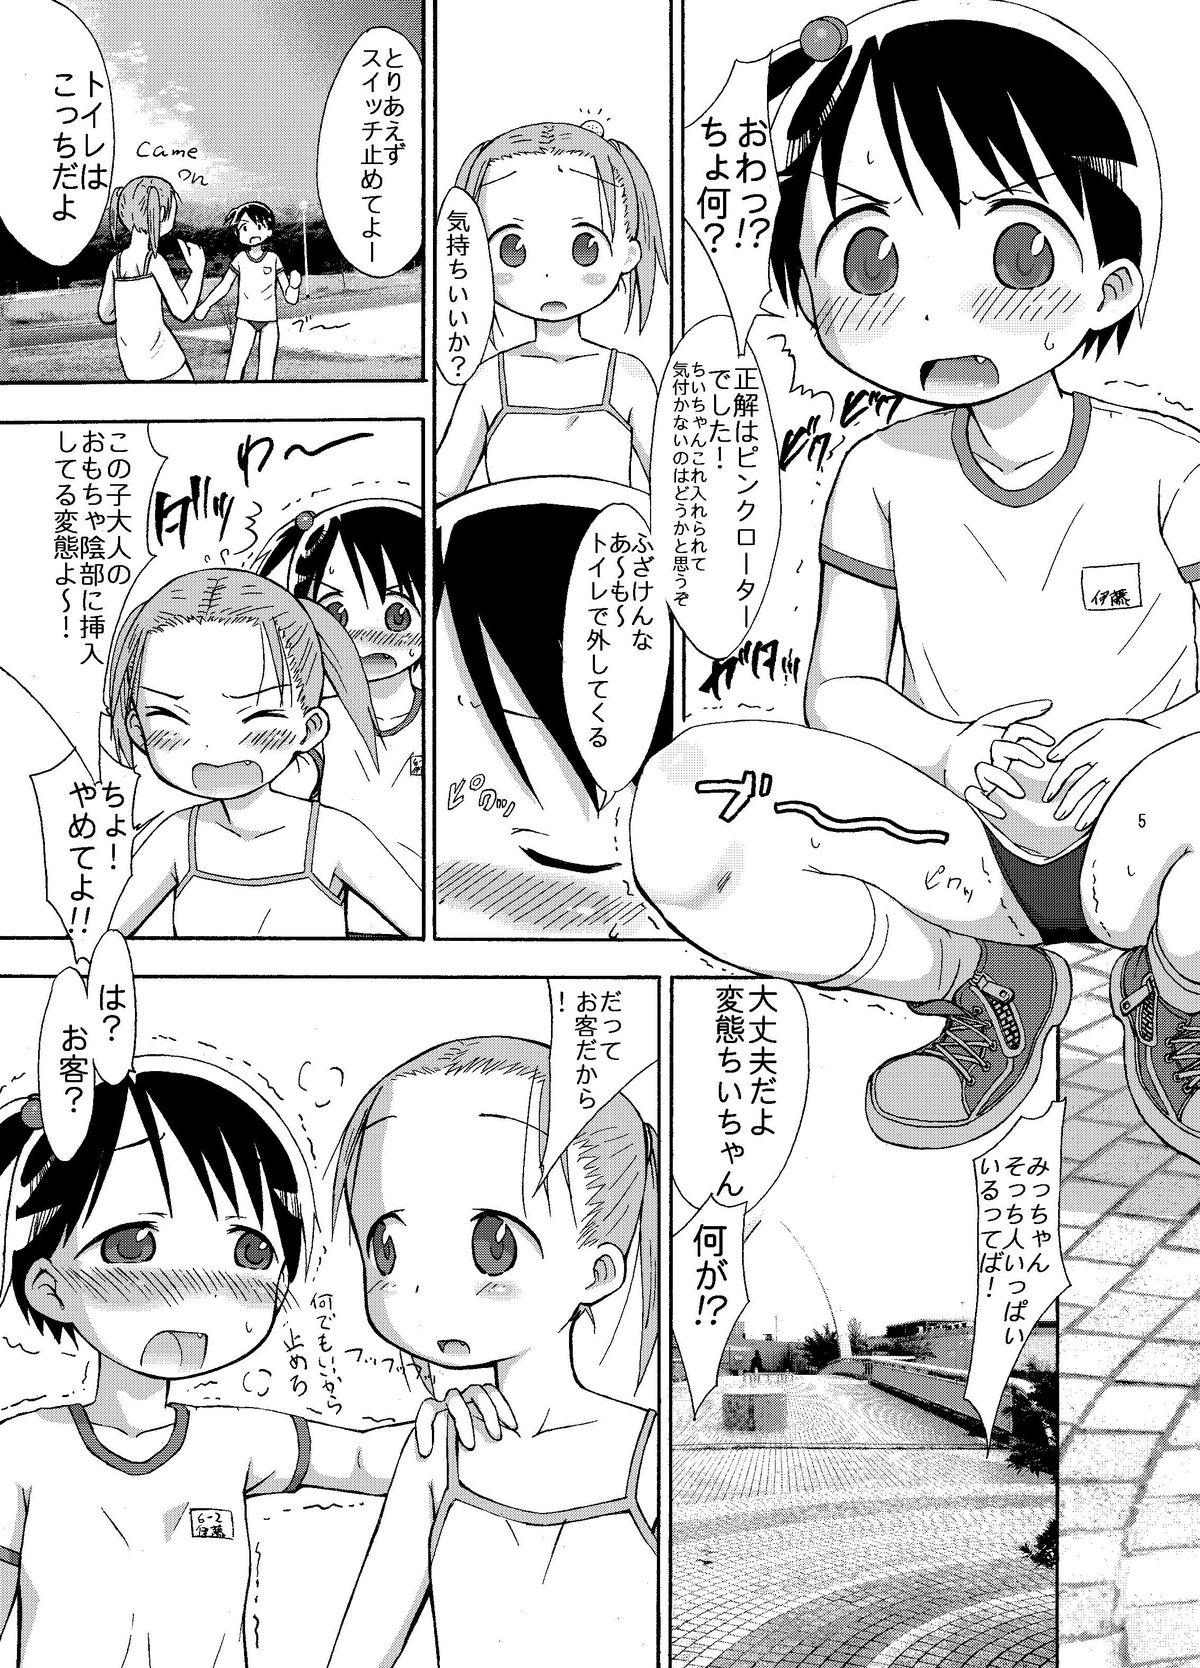 Fellatio mashimaro ism L - Ichigo mashimaro Buttplug - Page 5